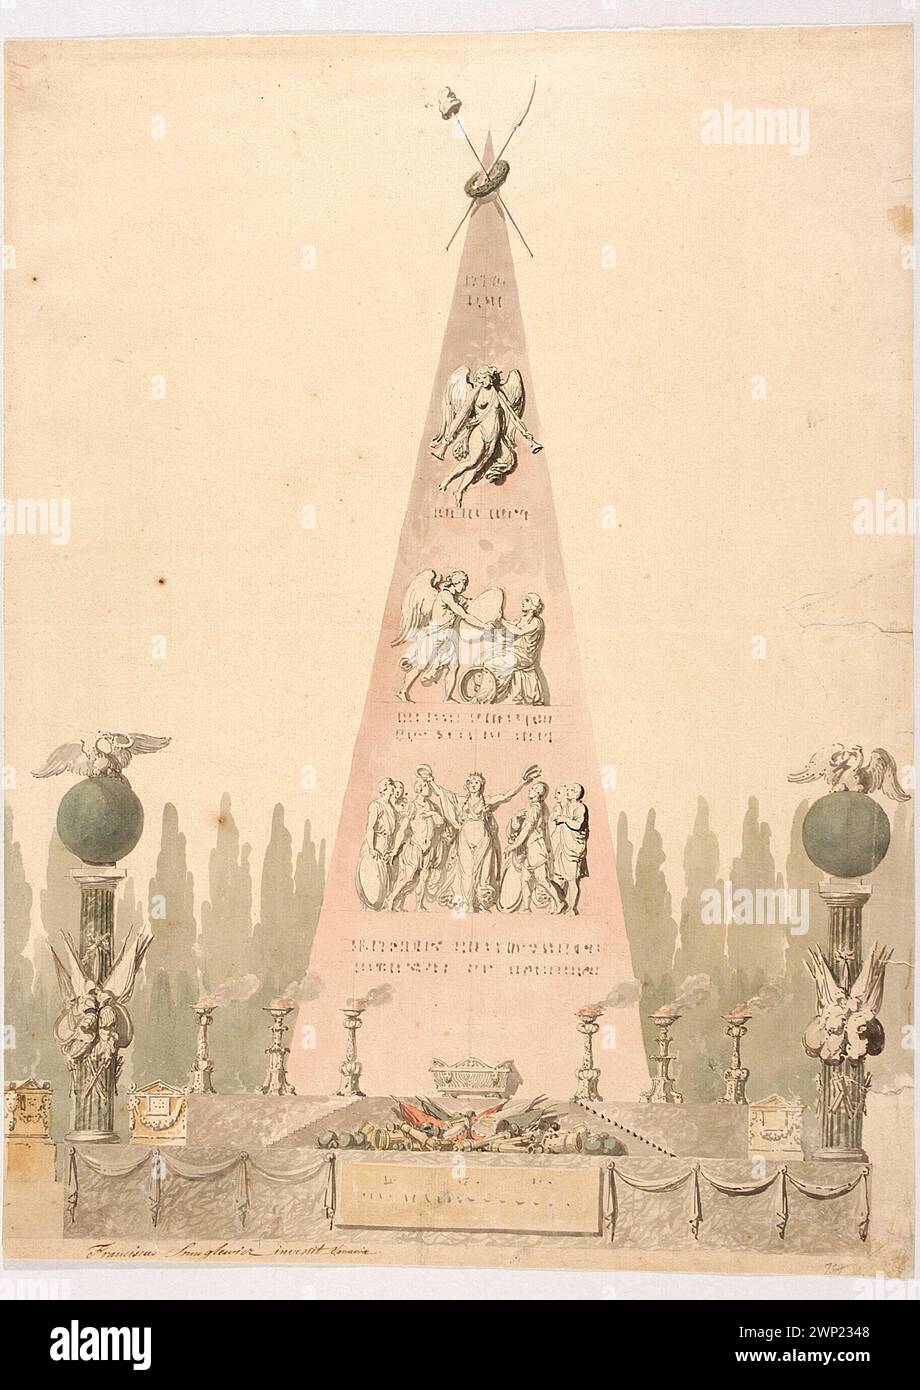 Il disegno del monumento in onore degli eroi della rivolta di Ciuszkowski Kościuszko; Smuglewicz, Franciszek (1745-1807); 1795-1800 (1795-00-00-1800-00-00-00); Borowski, Gaspar (1785-1854), Branicki, Aleksander (1821-1877), Branicki, Aleksander (1821-1877)-collezioni, Branicki, Władysław (1848-1914), Branicki, Władysław (1848-1914)-collezioni, collezioni di Sucha-Collection, fama (allegoria), Tarnowska, Anna (1876-1953), Tarnowska, Anna (1876-1953)-collezioni, Tarnowski, Juliusz (1864-1917), Tarnowski, Juliusz (1864-1917)-collezioni, collezioni, Tarnowski, Juliusz Gabriel (1901-1989), Tarnow Foto Stock